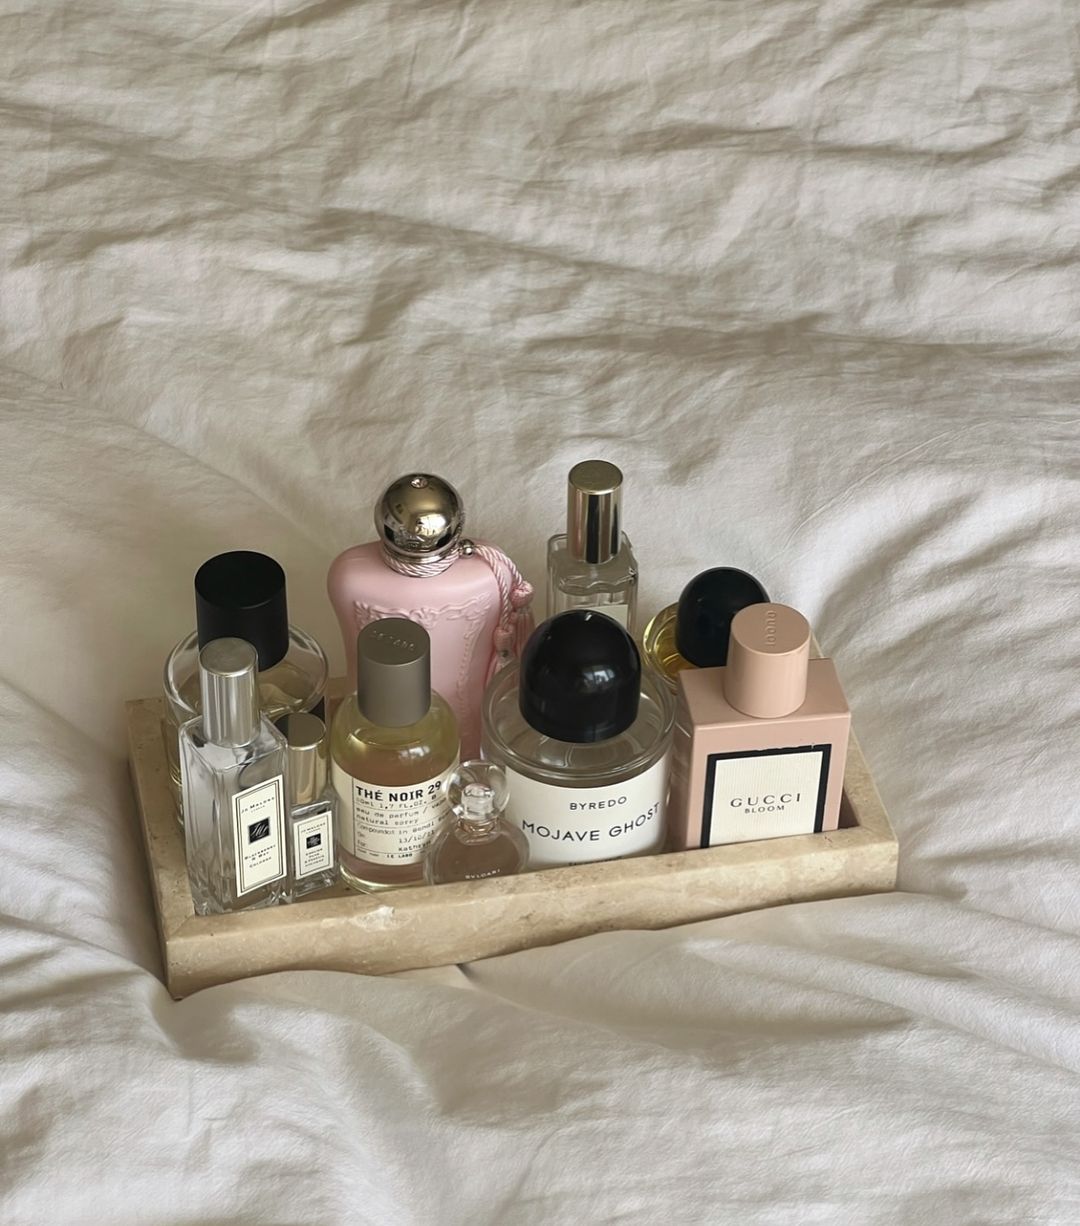 Massimo Dutti ima odlične parfeme koji mirišu isto kao i luksuzni – izdvojili smo favorite